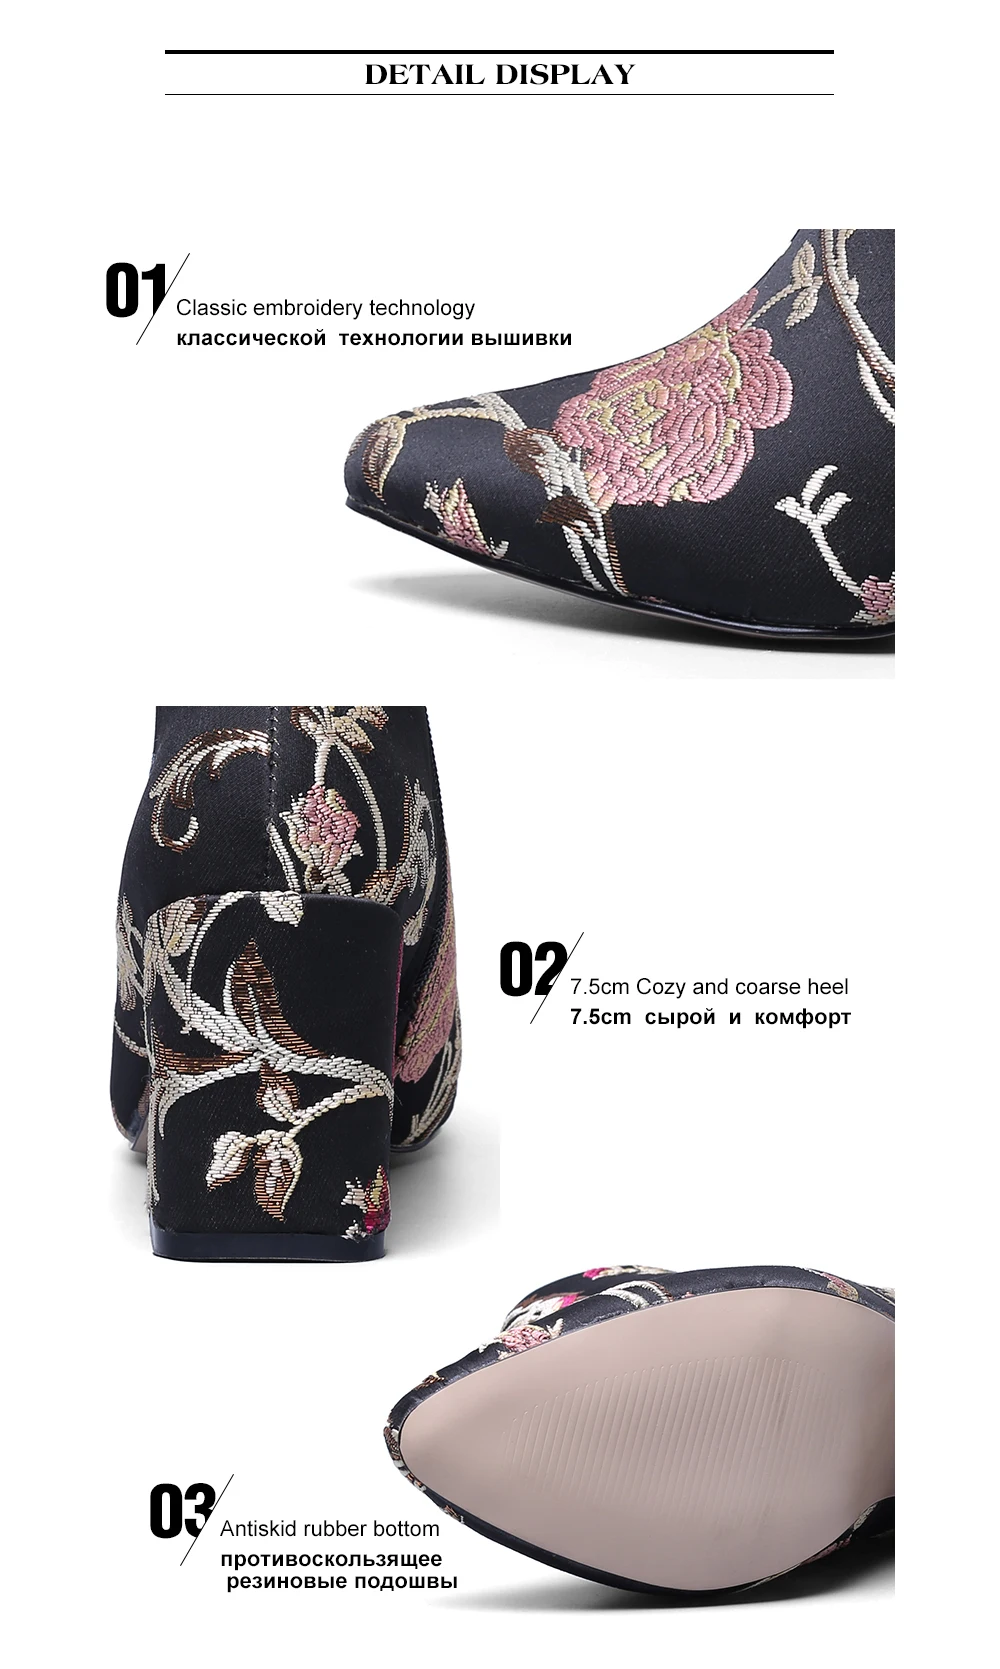 Г.; Модные женские удобные осенние ботильоны из натуральной замши с вышитыми цветами на среднем каблуке; короткие ботиночки; большие размеры